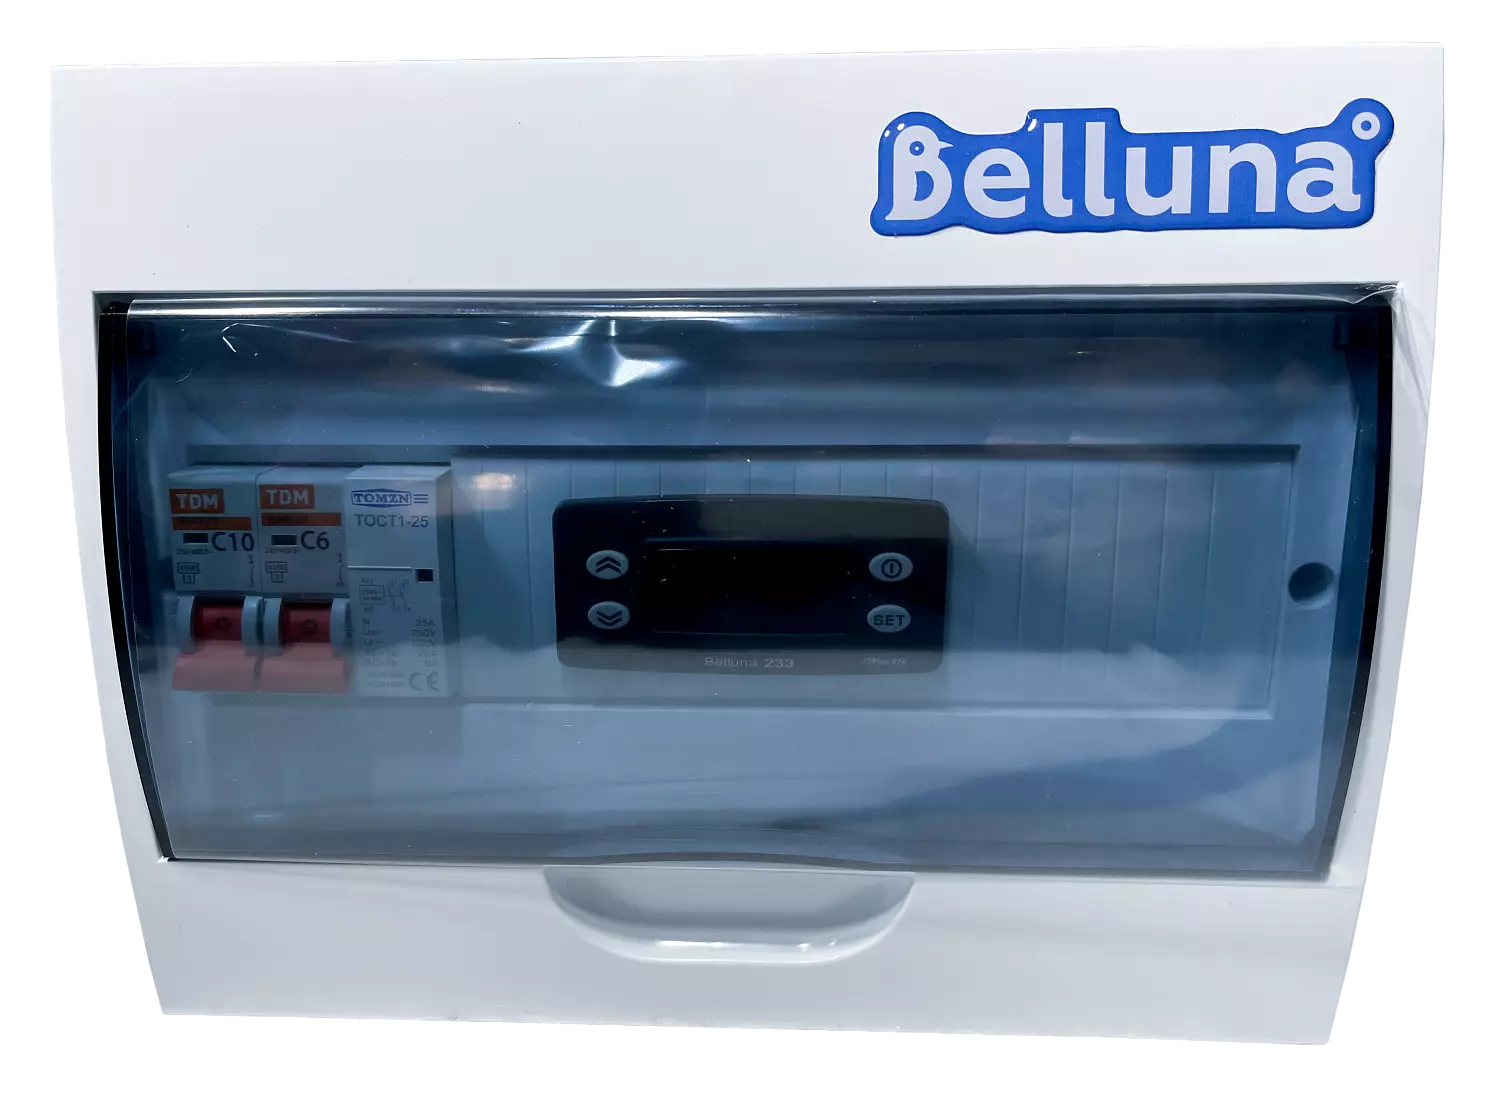 сплит-система Belluna S226 W Челябинск